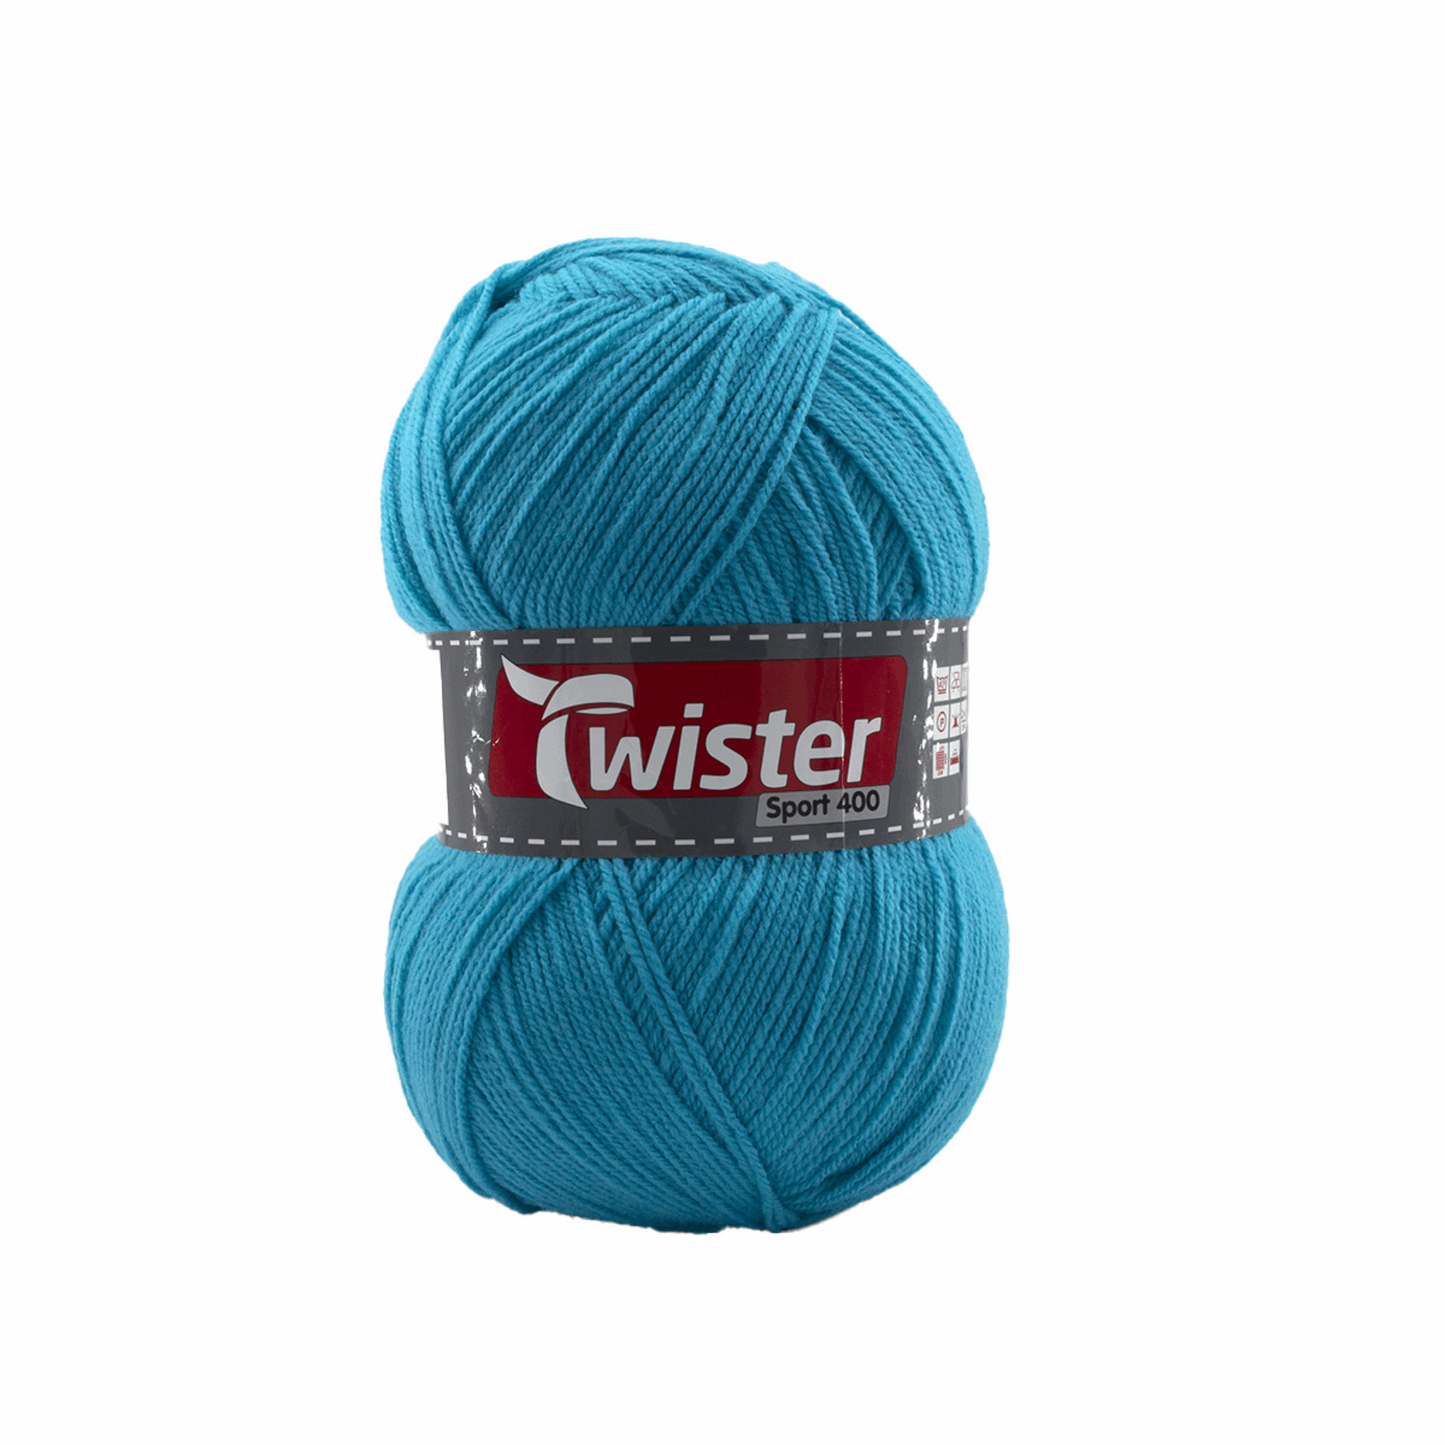 Twister Sport 400, 98328, Farbe dkl.-türkis 62